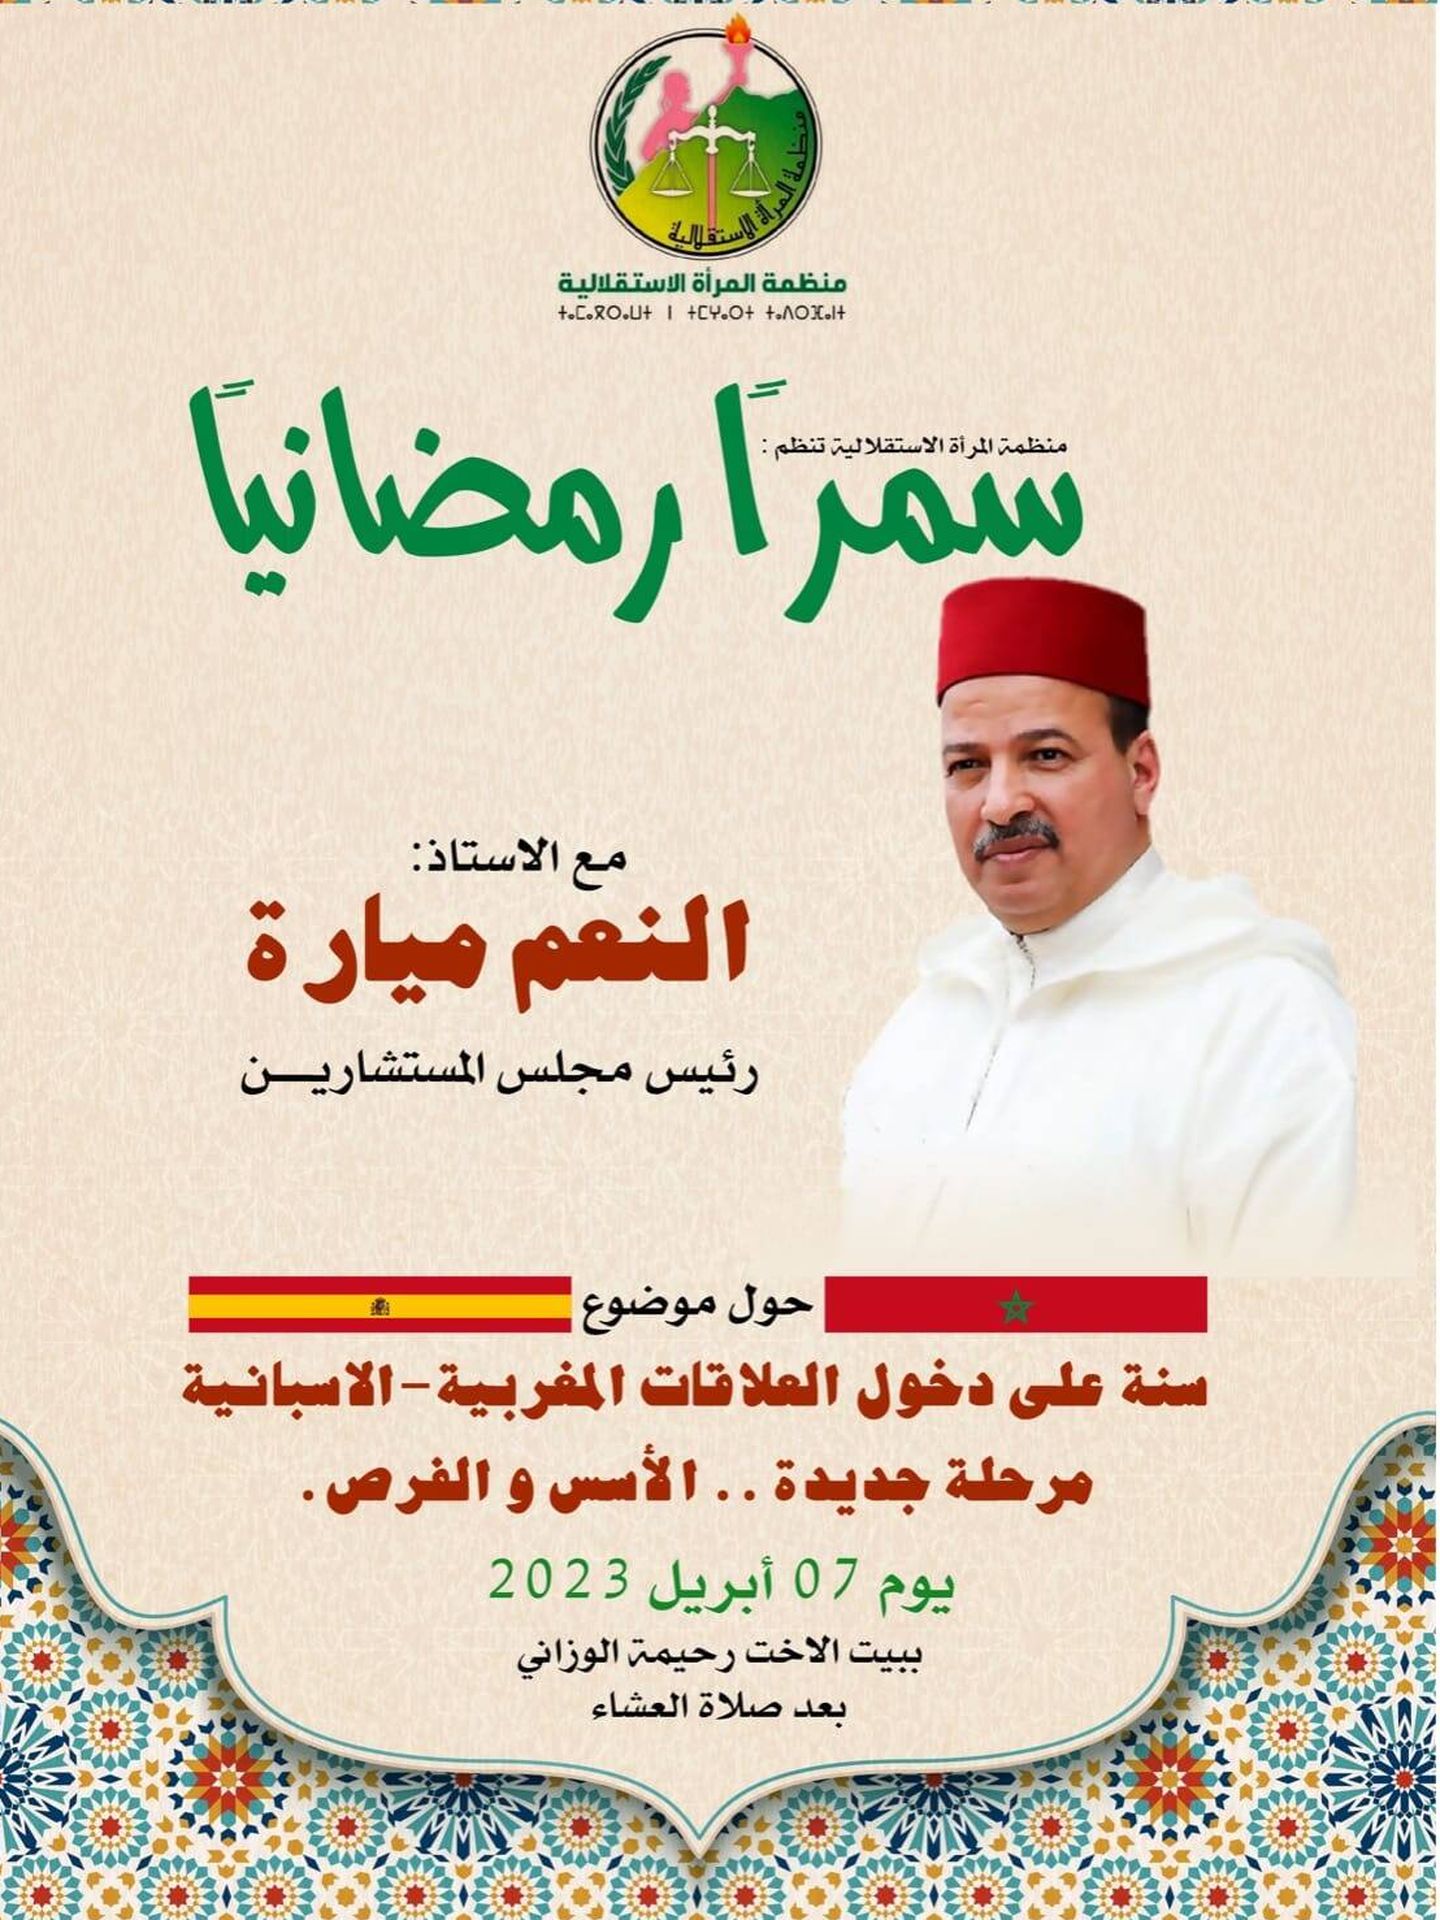 El cartel anunciador del acto del presidente del Senado de Marruecos.